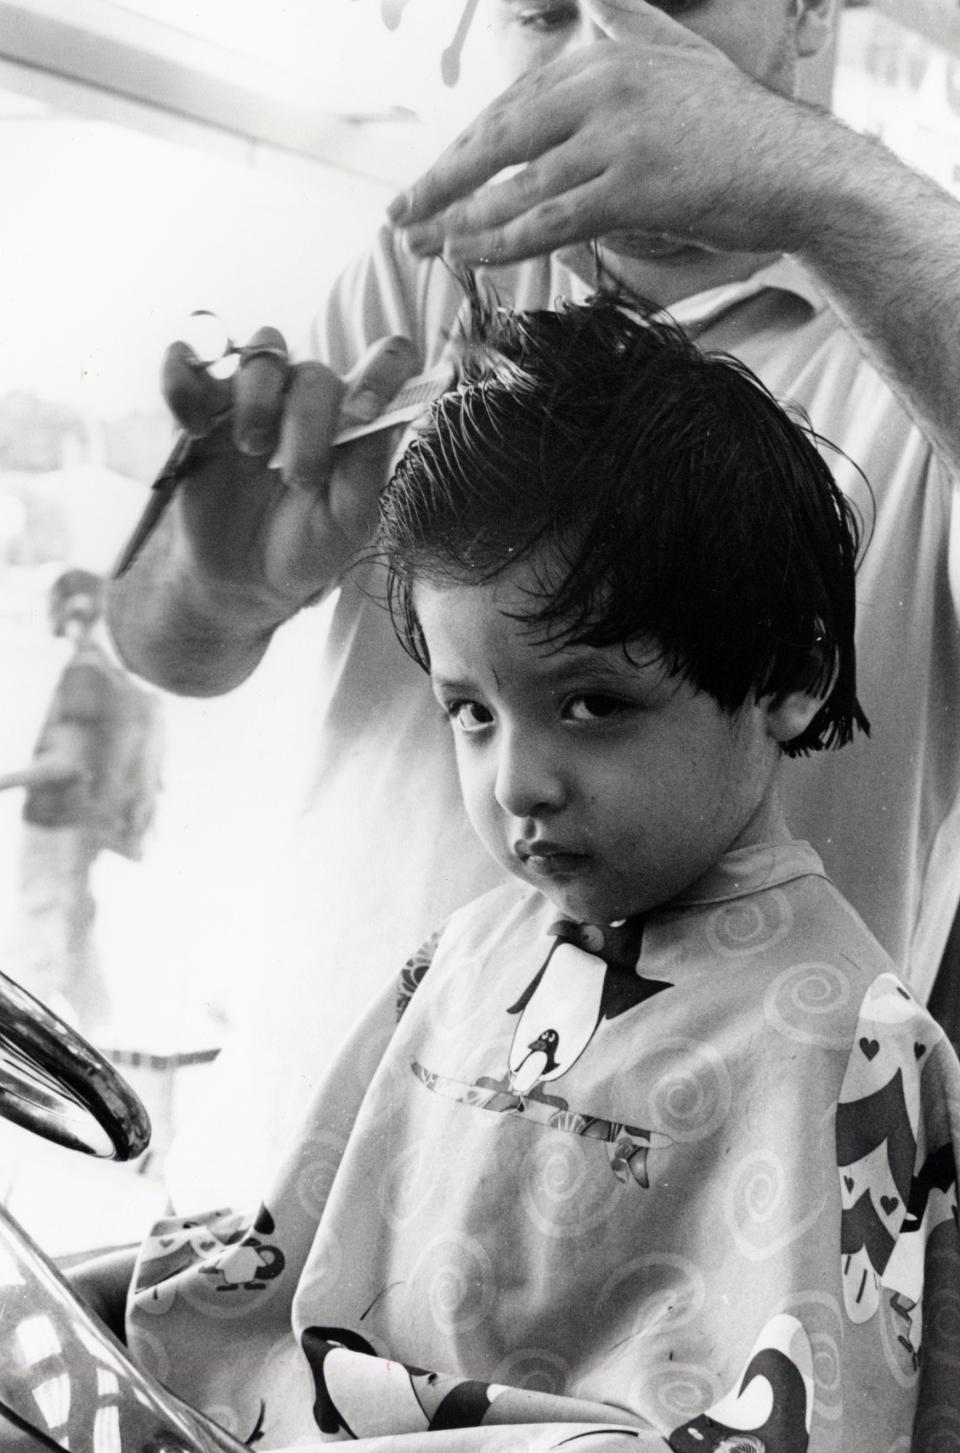 A child getting a haircut.